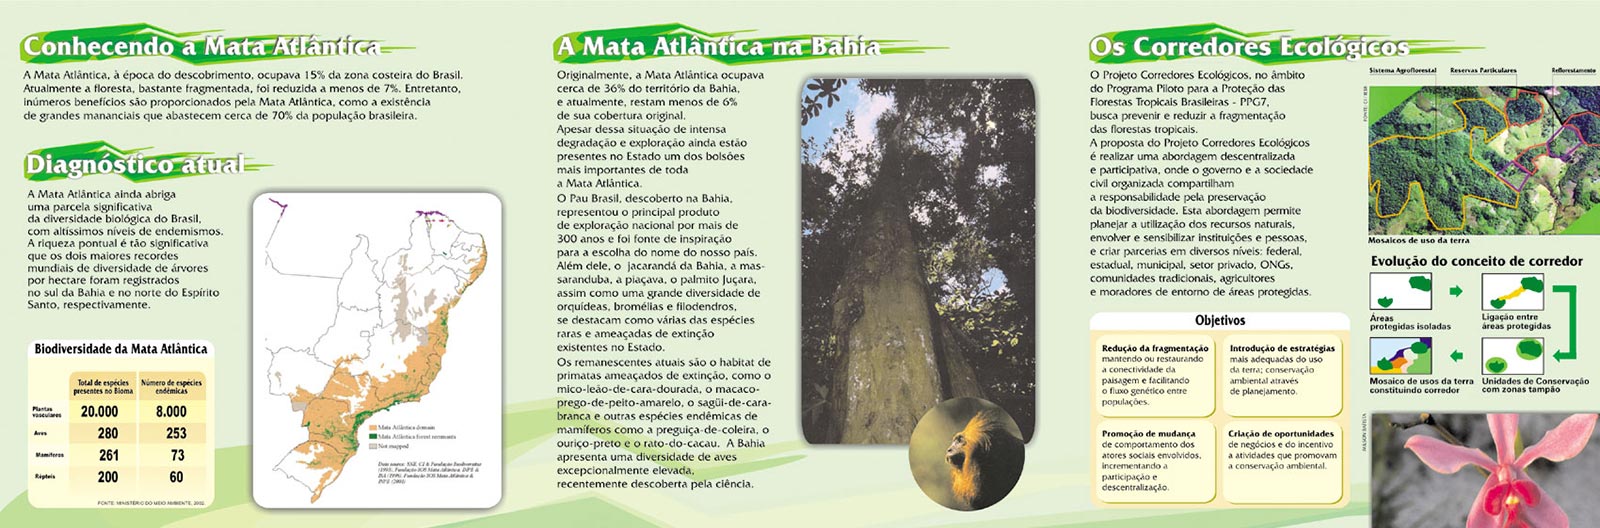 Dans la partie intérieure de la brochure 'Corridor Central de la Mata Atlântica en Bahia', nous présentons des informations sur la Mata Atlântica, y compris son diagnostic actuel, la situation en Bahia et les Corridors Écologiques. Projet de design graphique par Nêio Mustafa.